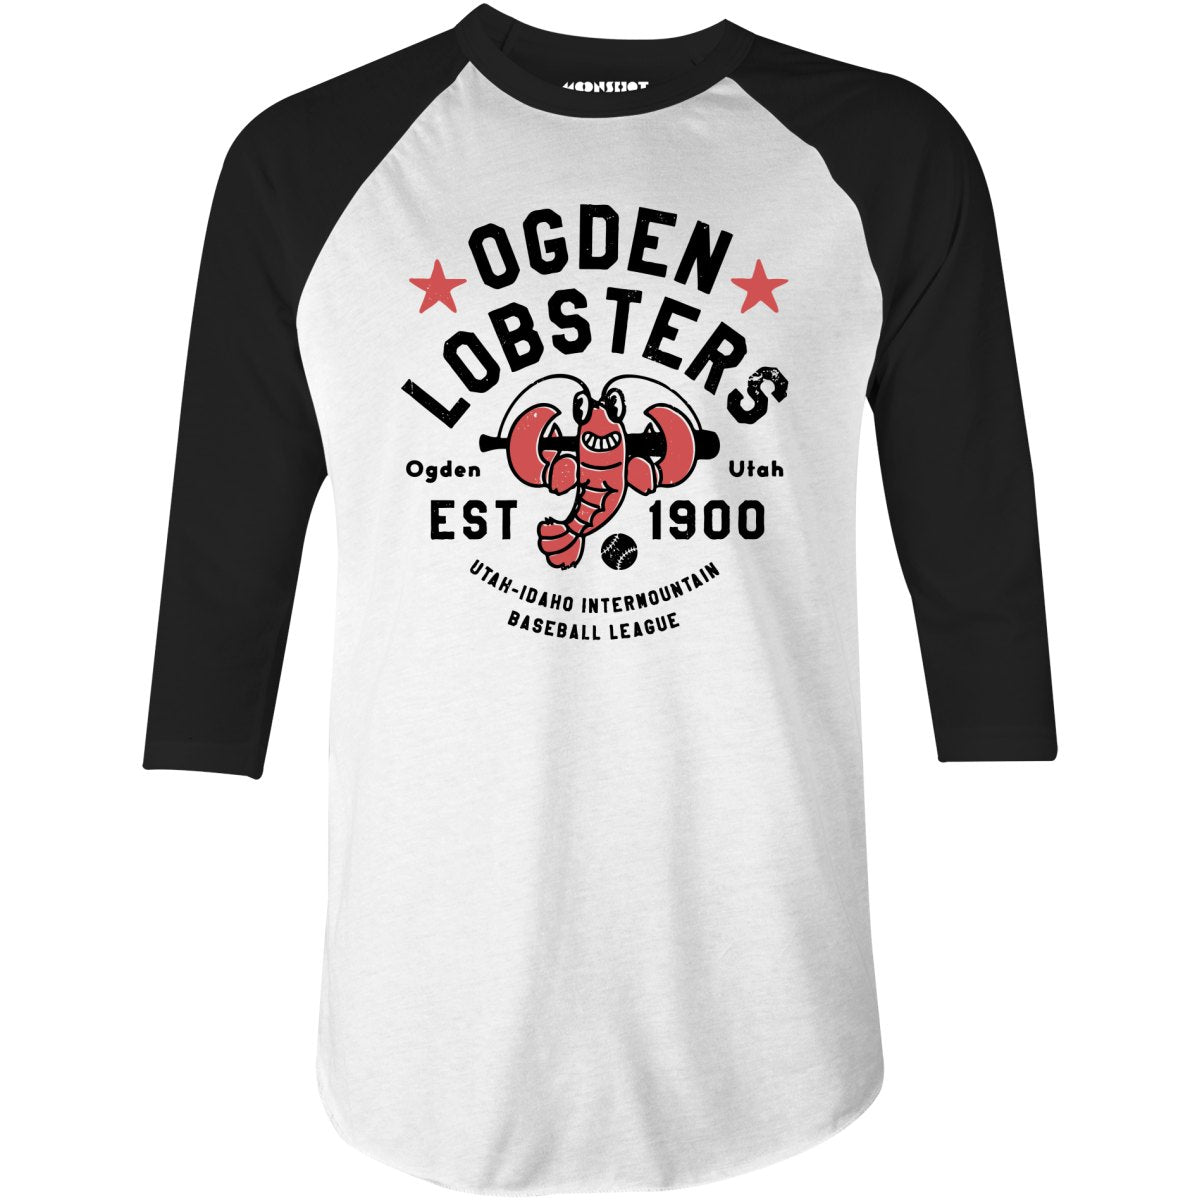 Ogden Lobsters - Utah - Vintage Defunct Baseball Teams - 3/4 Sleeve Raglan T-Shirt